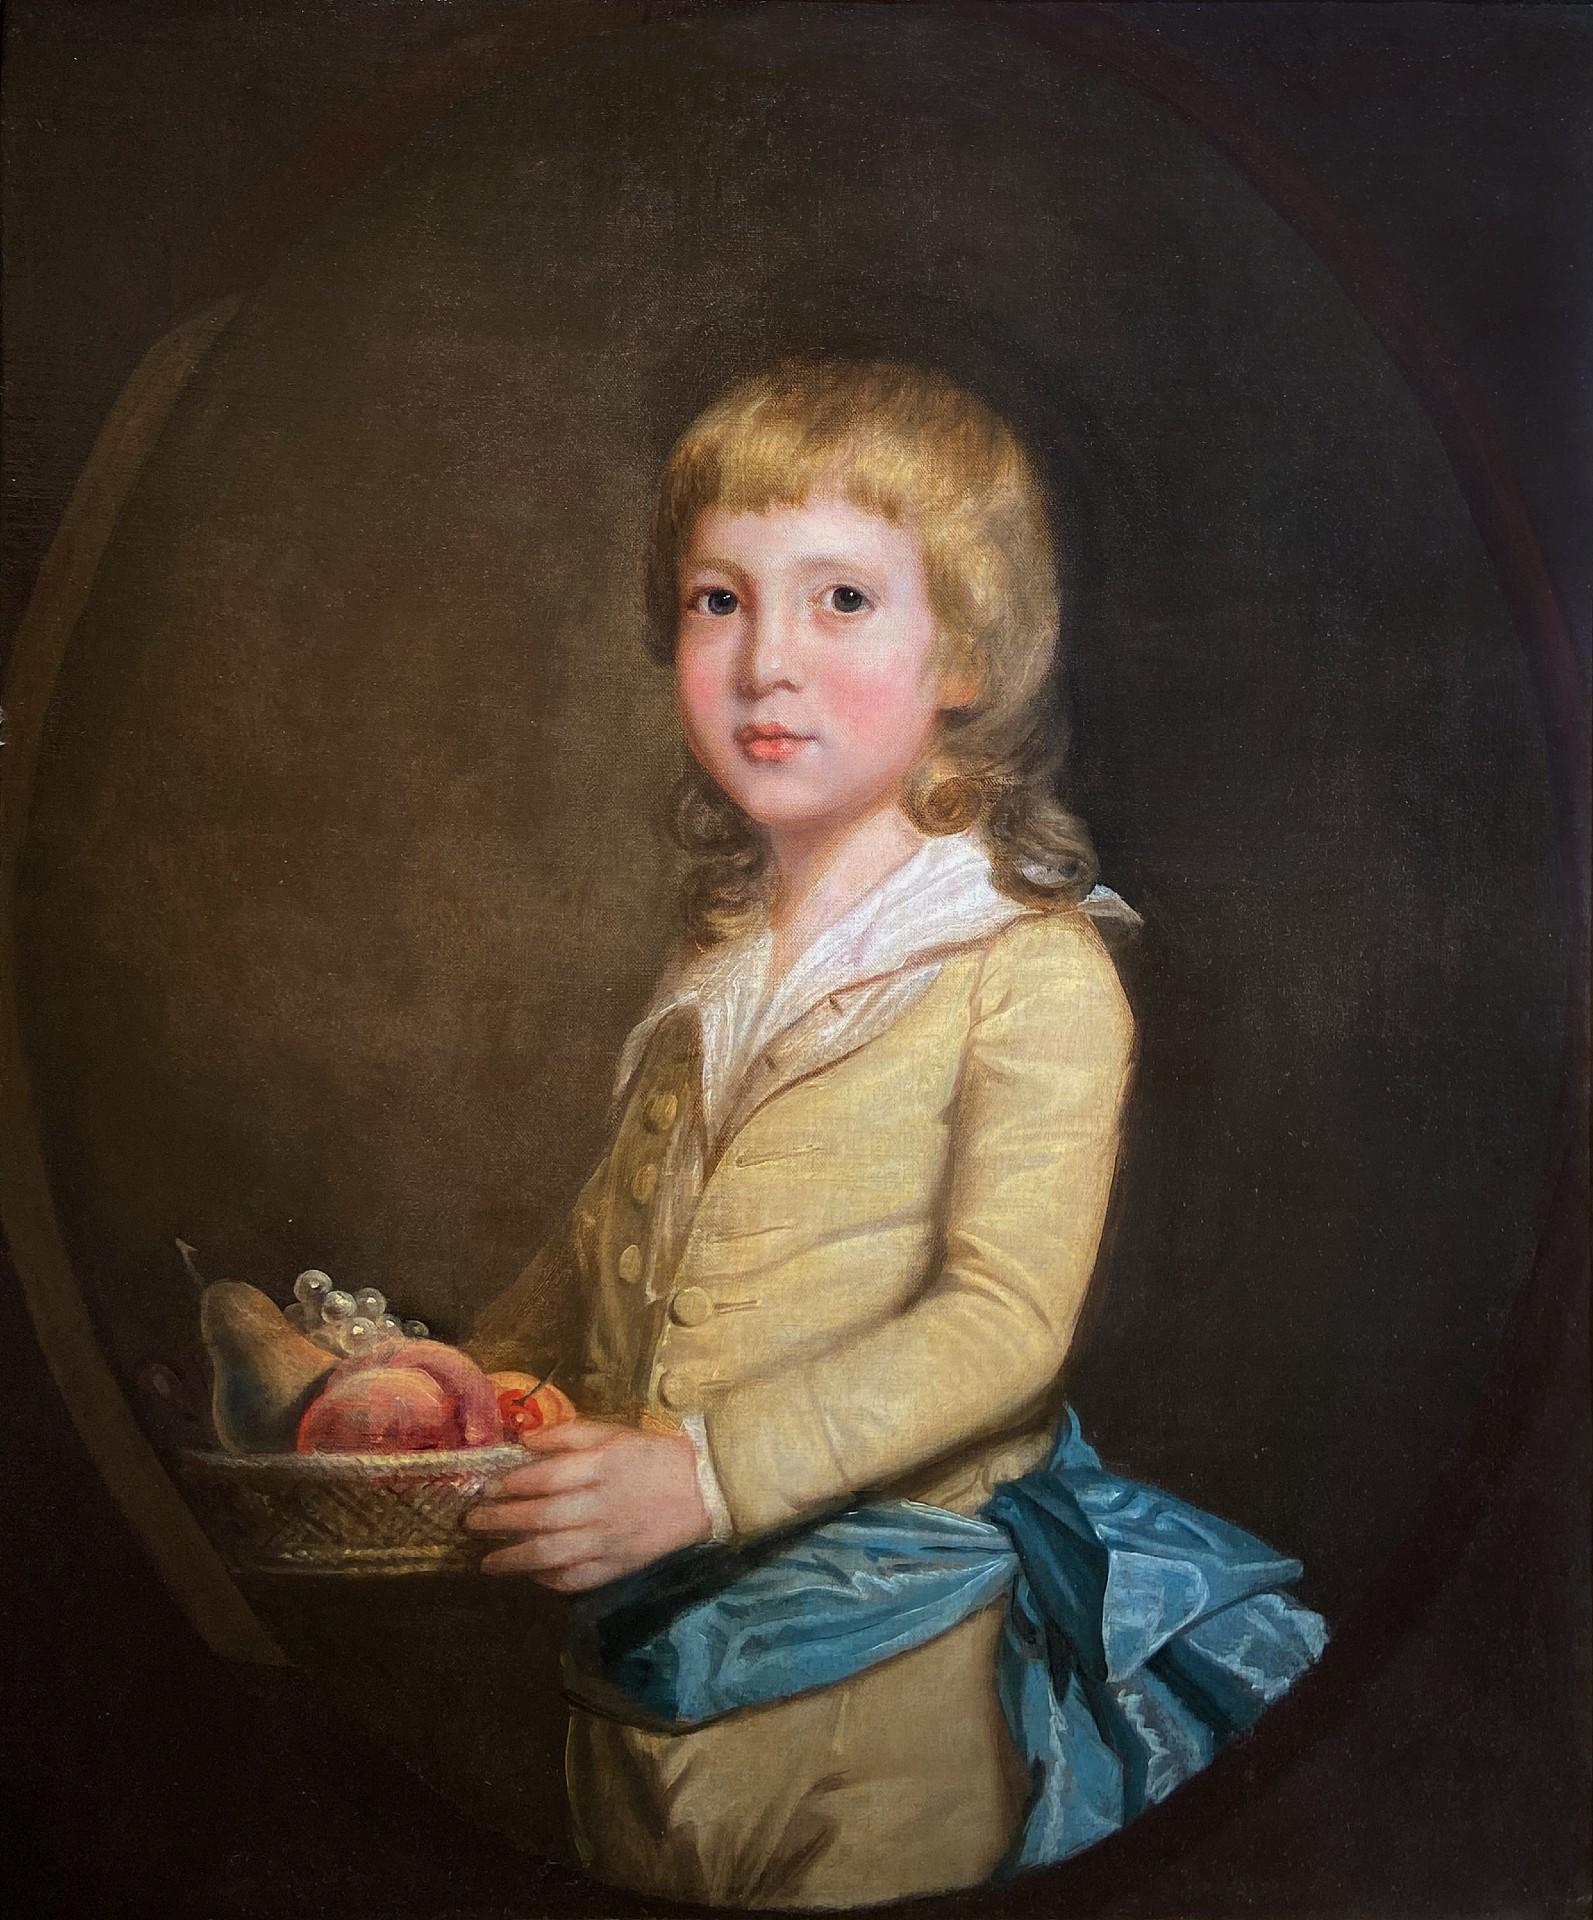 Porträt eines jungen Jungen, der einen Obstkorb trägt, Öl auf Leinwand, 18. Jahrhundert